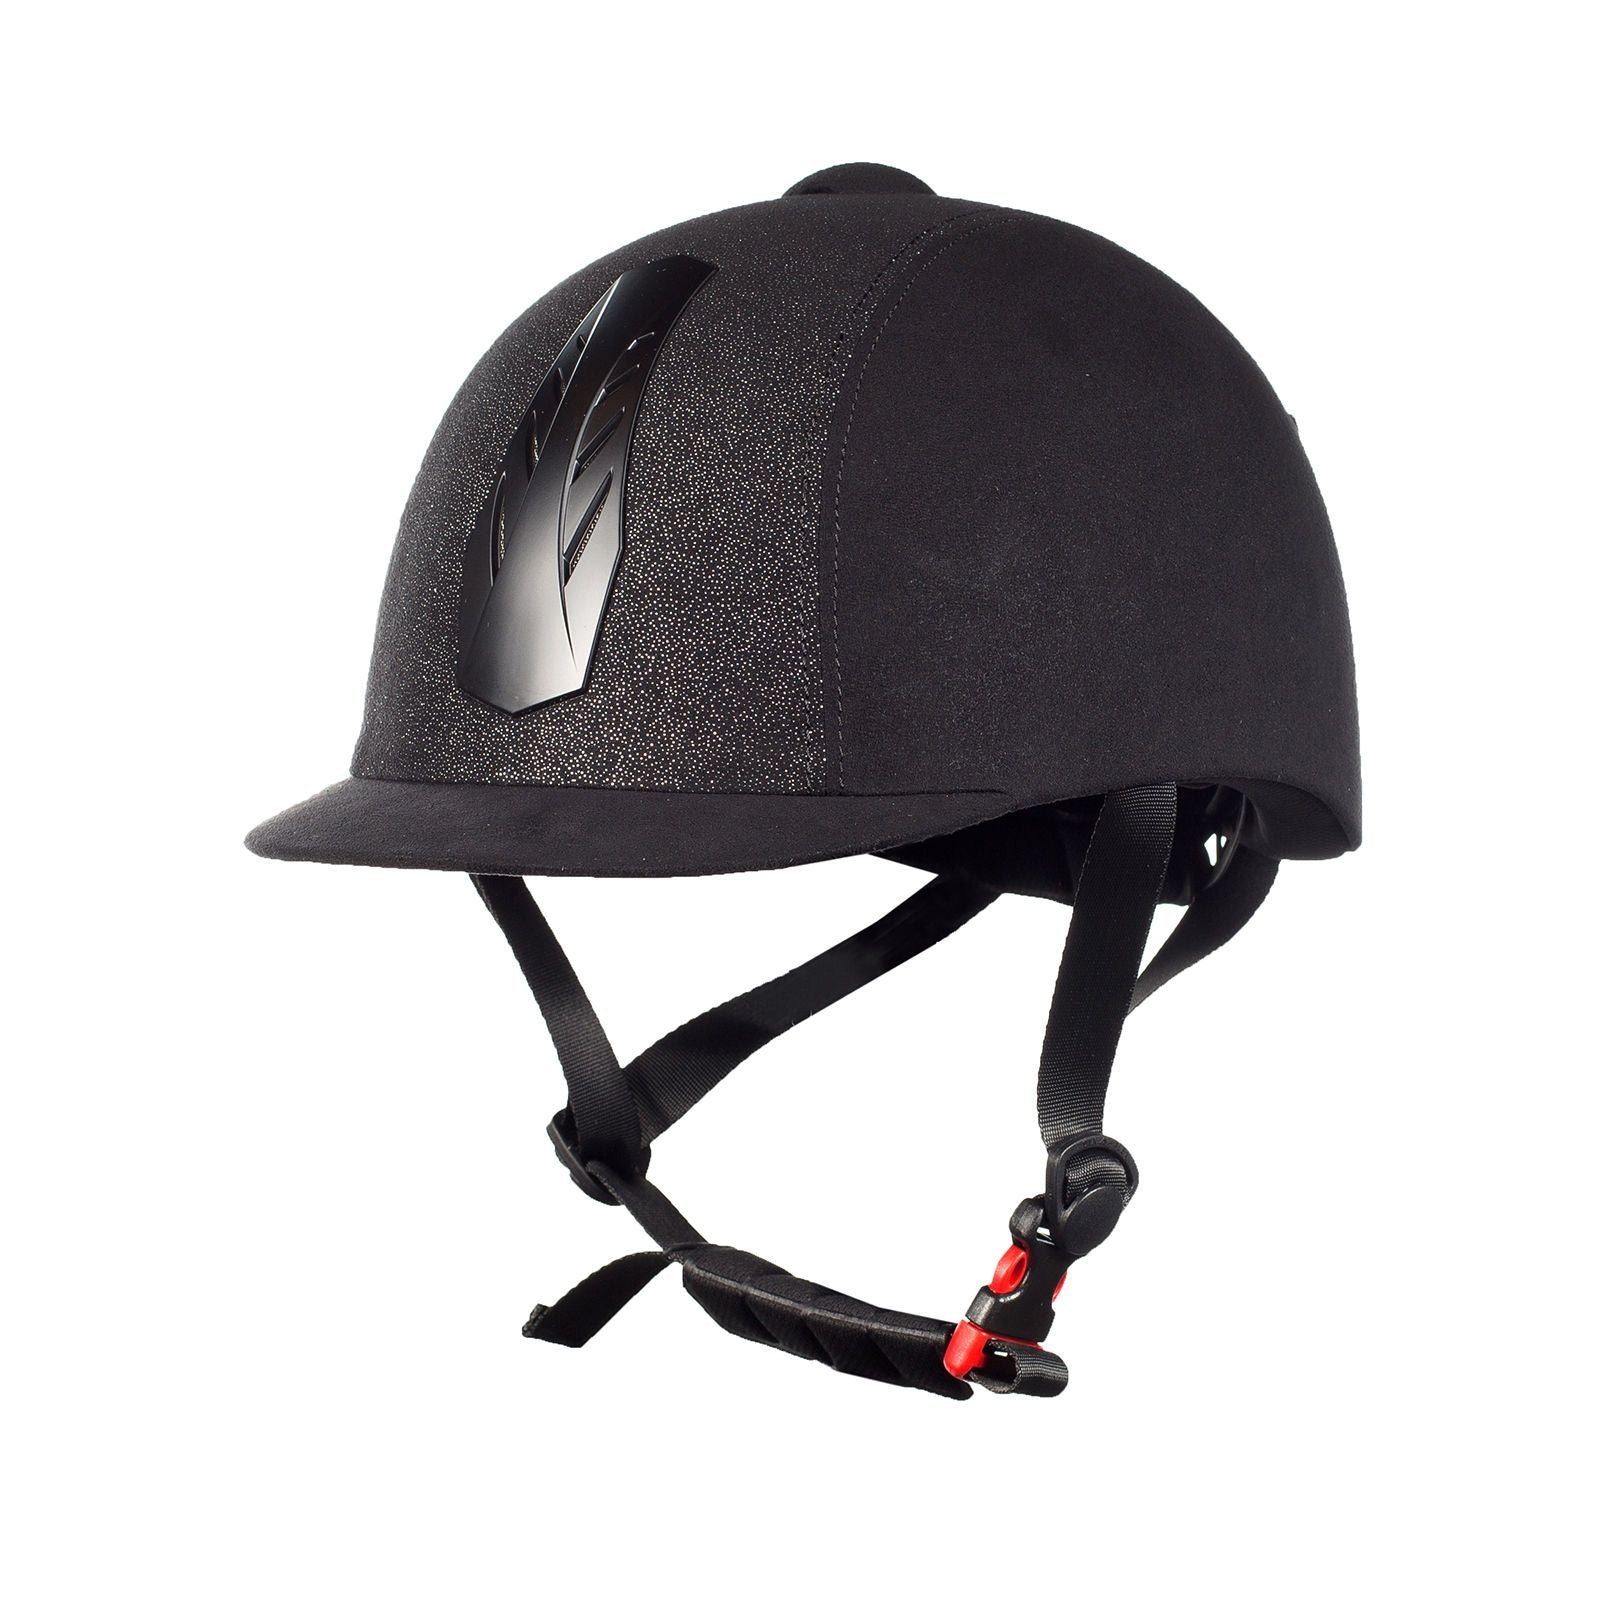 Triton Galaxy Helmet - Wanneroo Stockfeeders